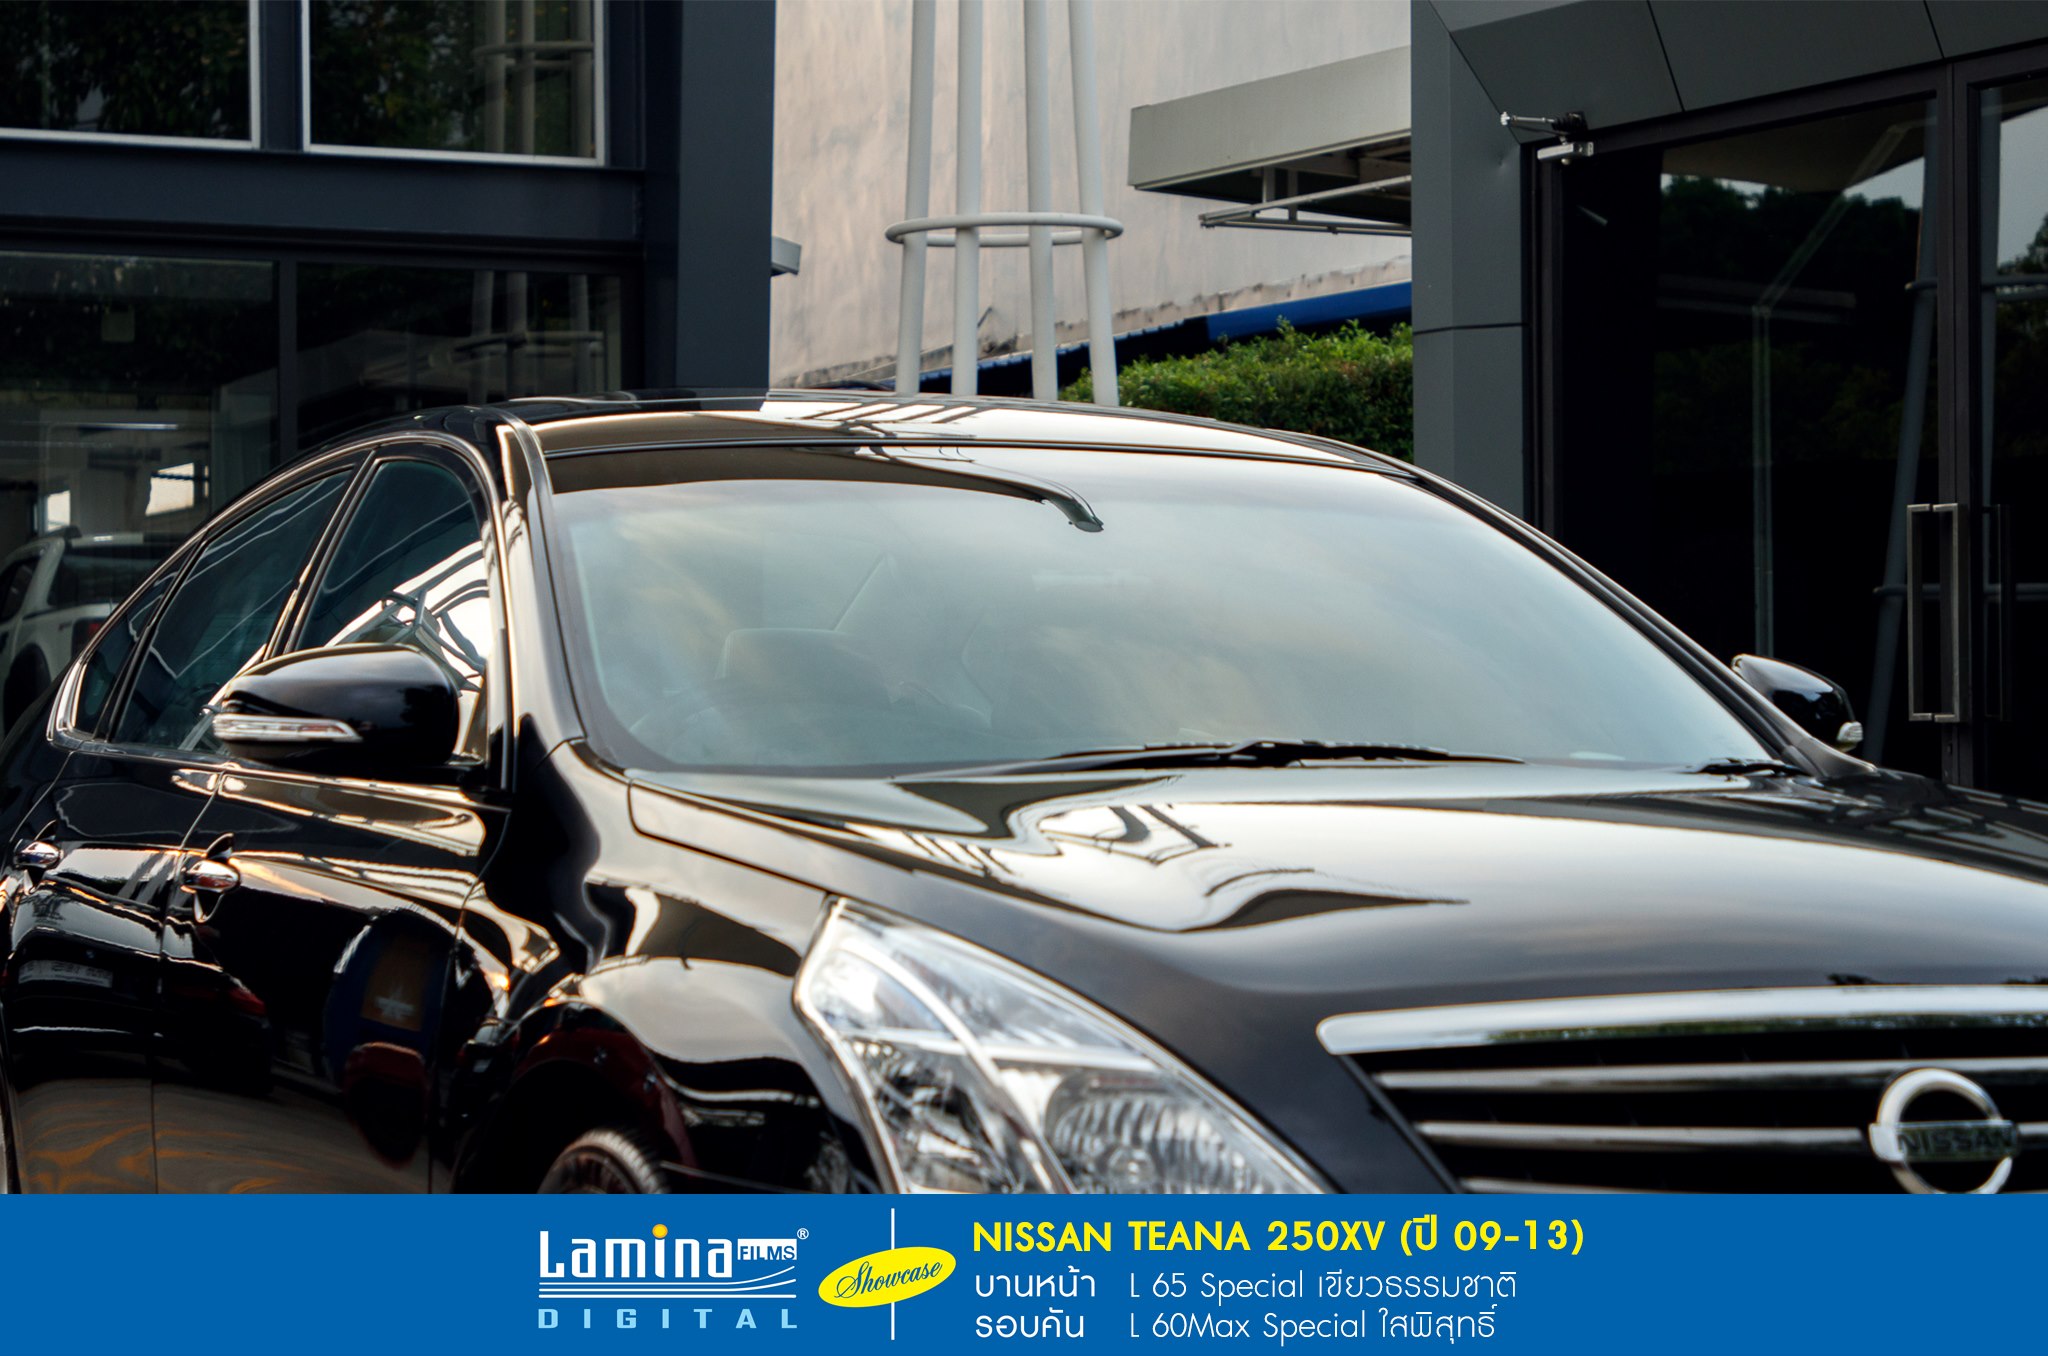 ฟิล์มใสกันร้อน lamina special series Nissan Teana 250xv 2